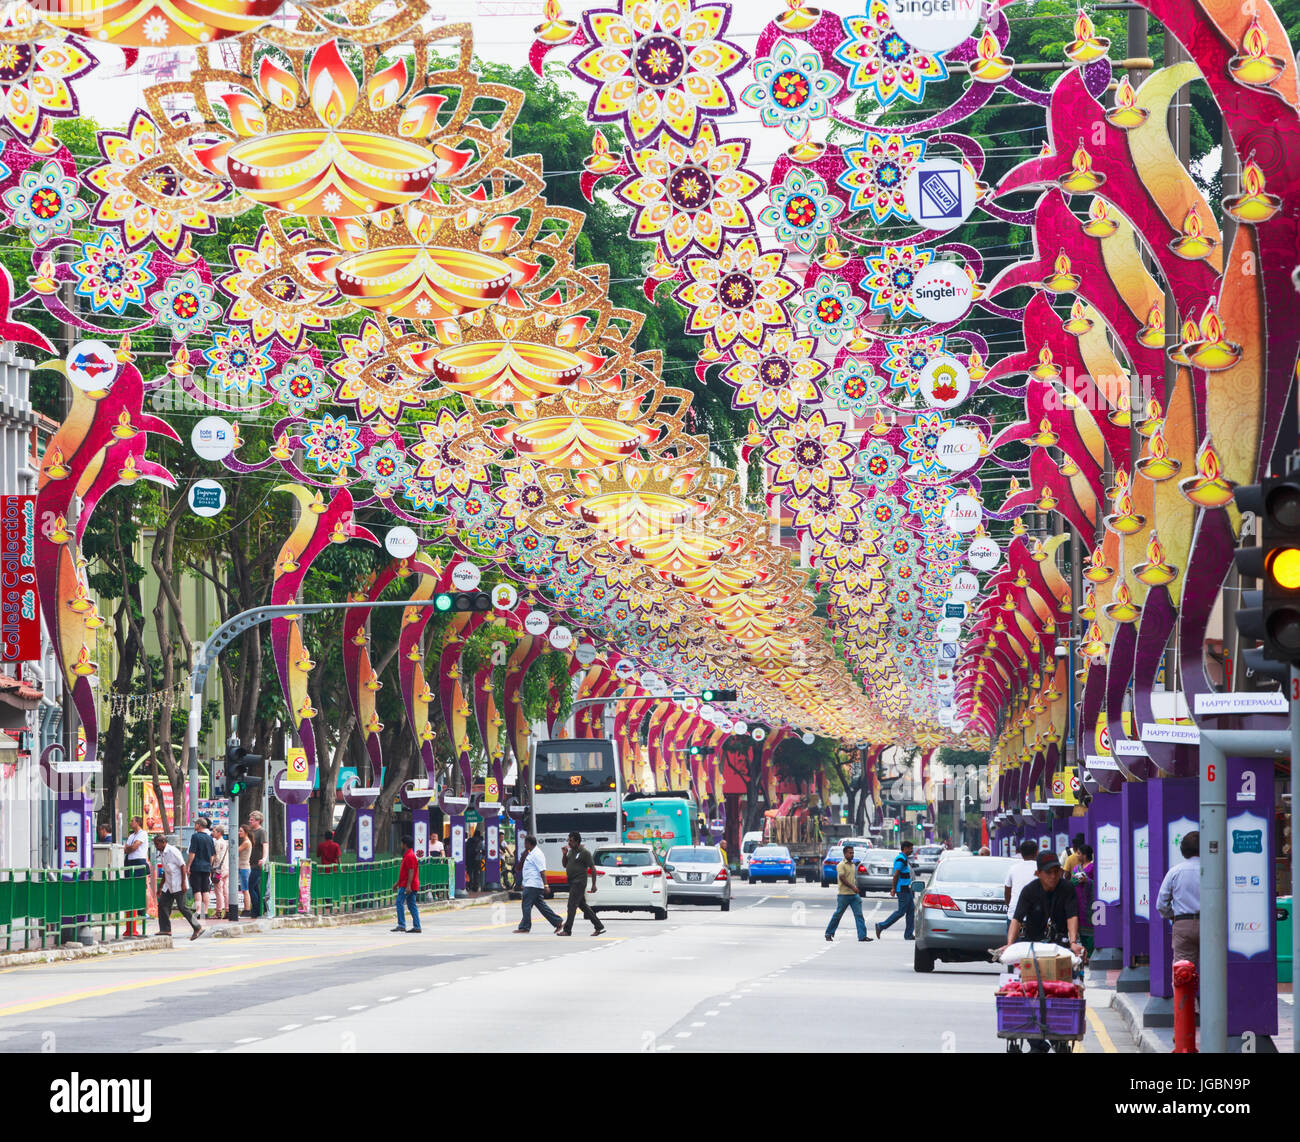 Repubblica di Singapore. Serangoon Road, la principale arteria della zona conosciuta come Little India. Le decorazioni sono per il Deepwali festival indù. Foto Stock